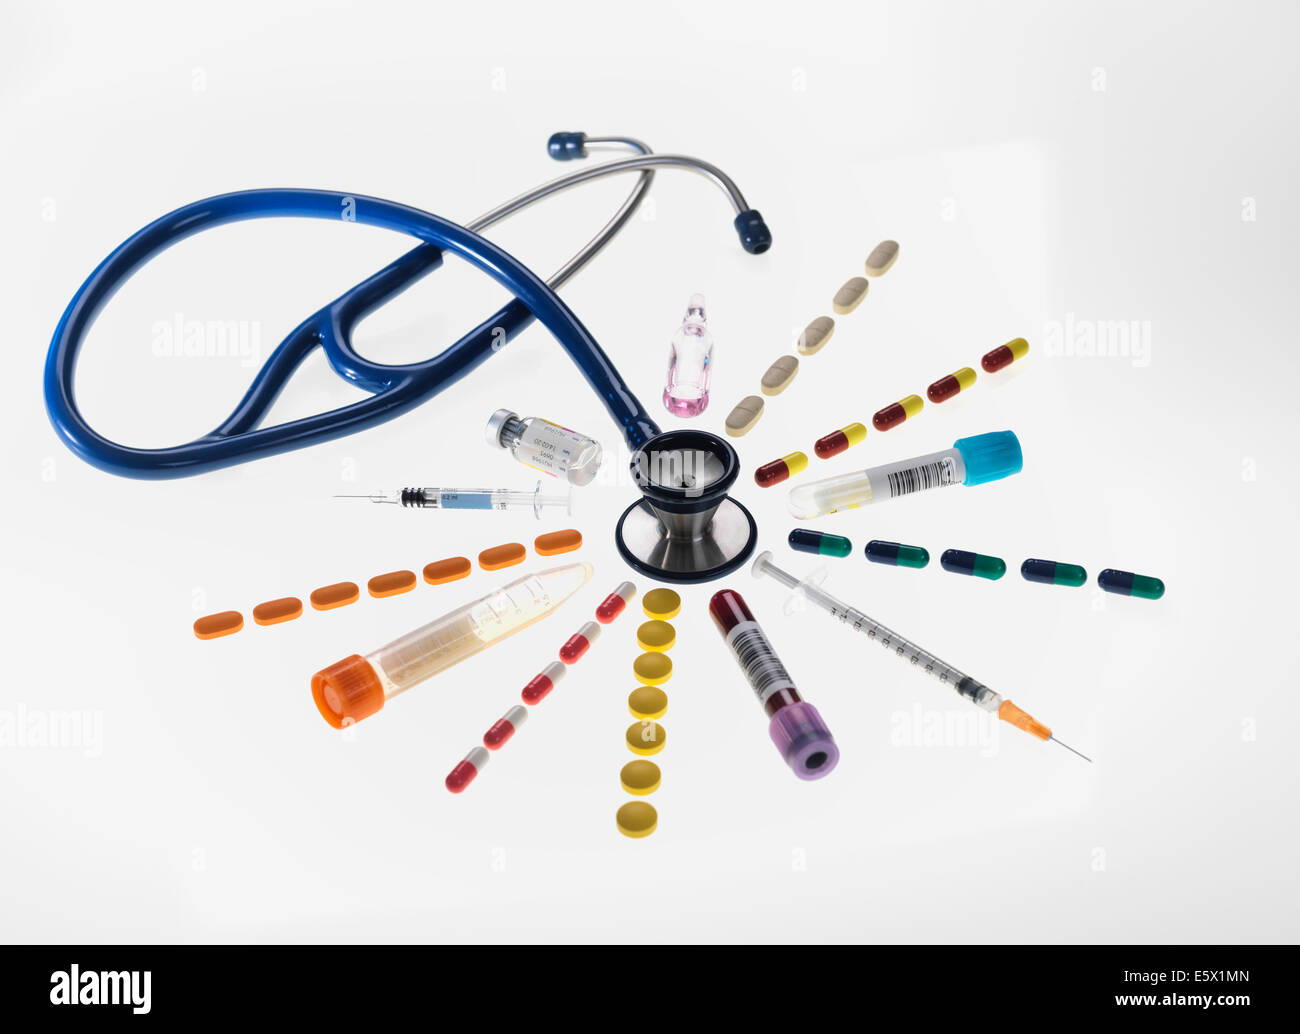 La vie encore médical illustrant une variété de tests, les traitements et les équipements médicaux utilisés dans les soins de santé médecine générale Banque D'Images